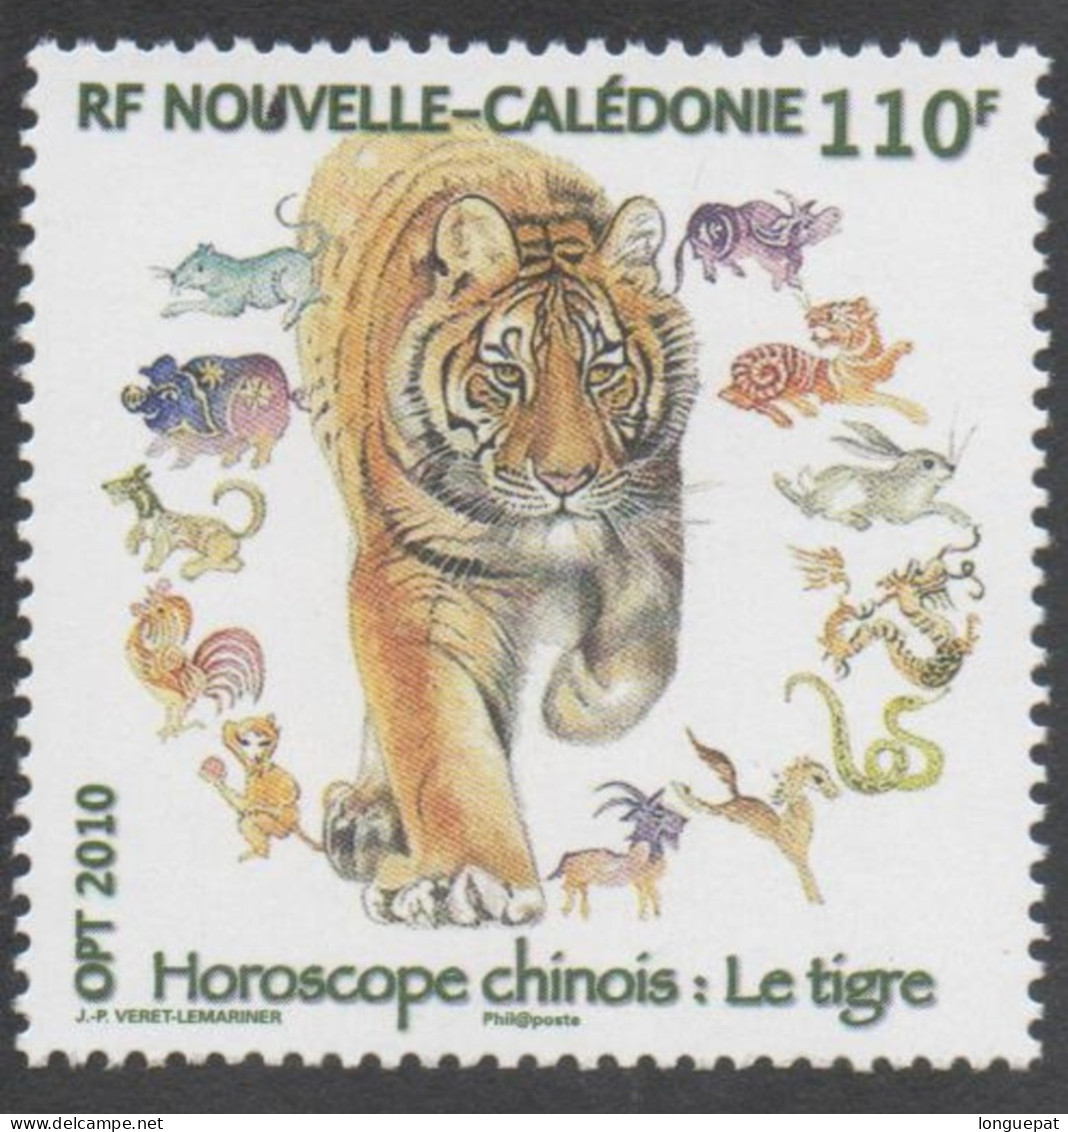 Nelle CALEDONIE - Année Lunaire Chinoise Du Tigre : Tigre Entouré Des Animaux Du Zodiaque Chinois - - Neufs